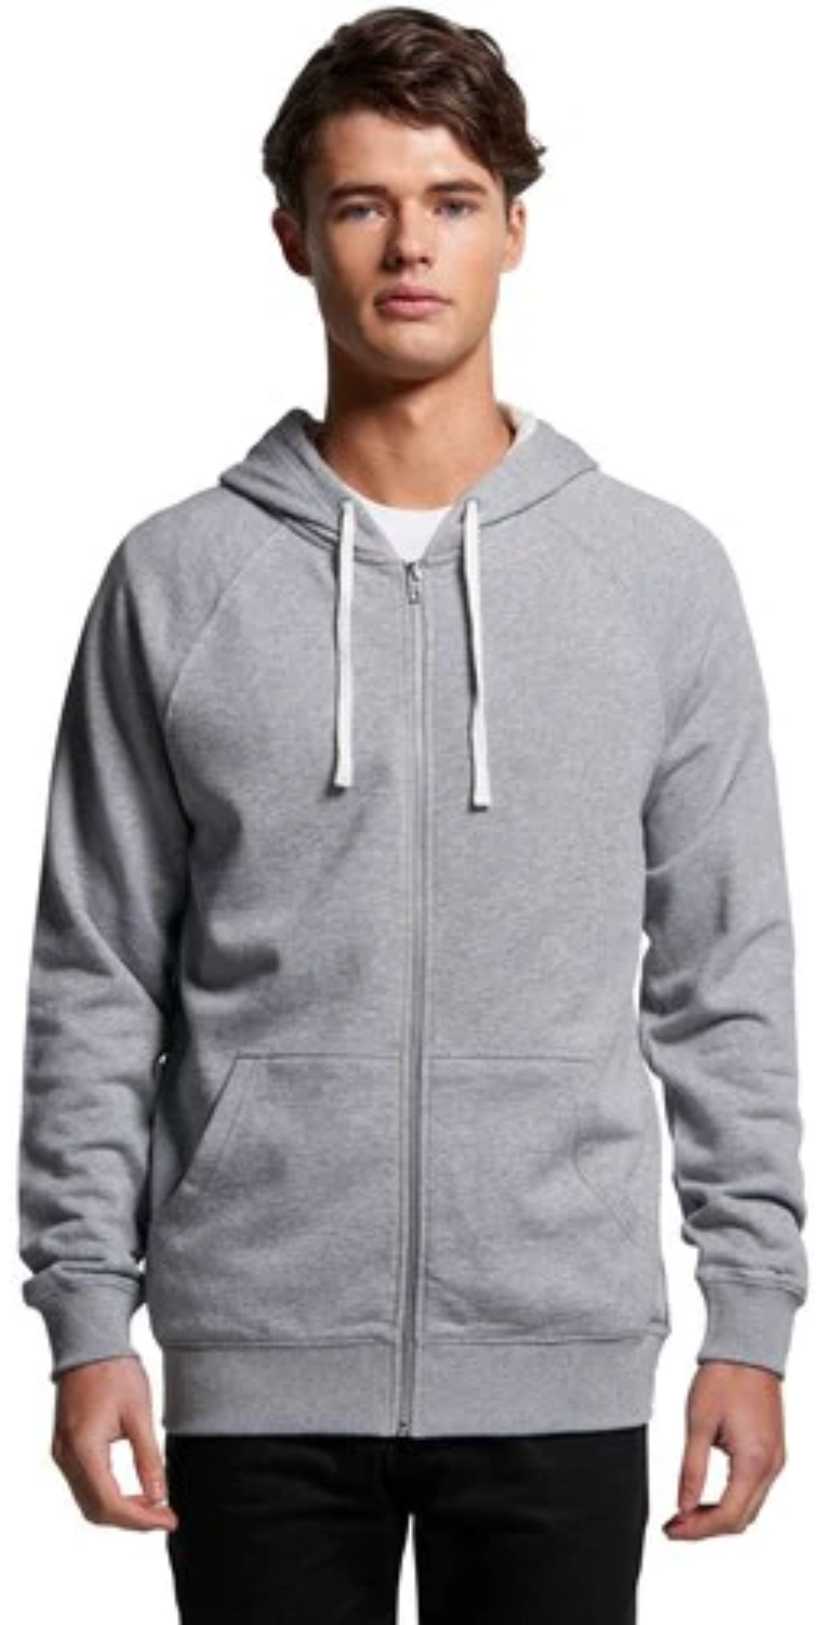 AS Colour 5122-350 gsm premium zip hoodie - $37.50 : TAS Workwear Group ...